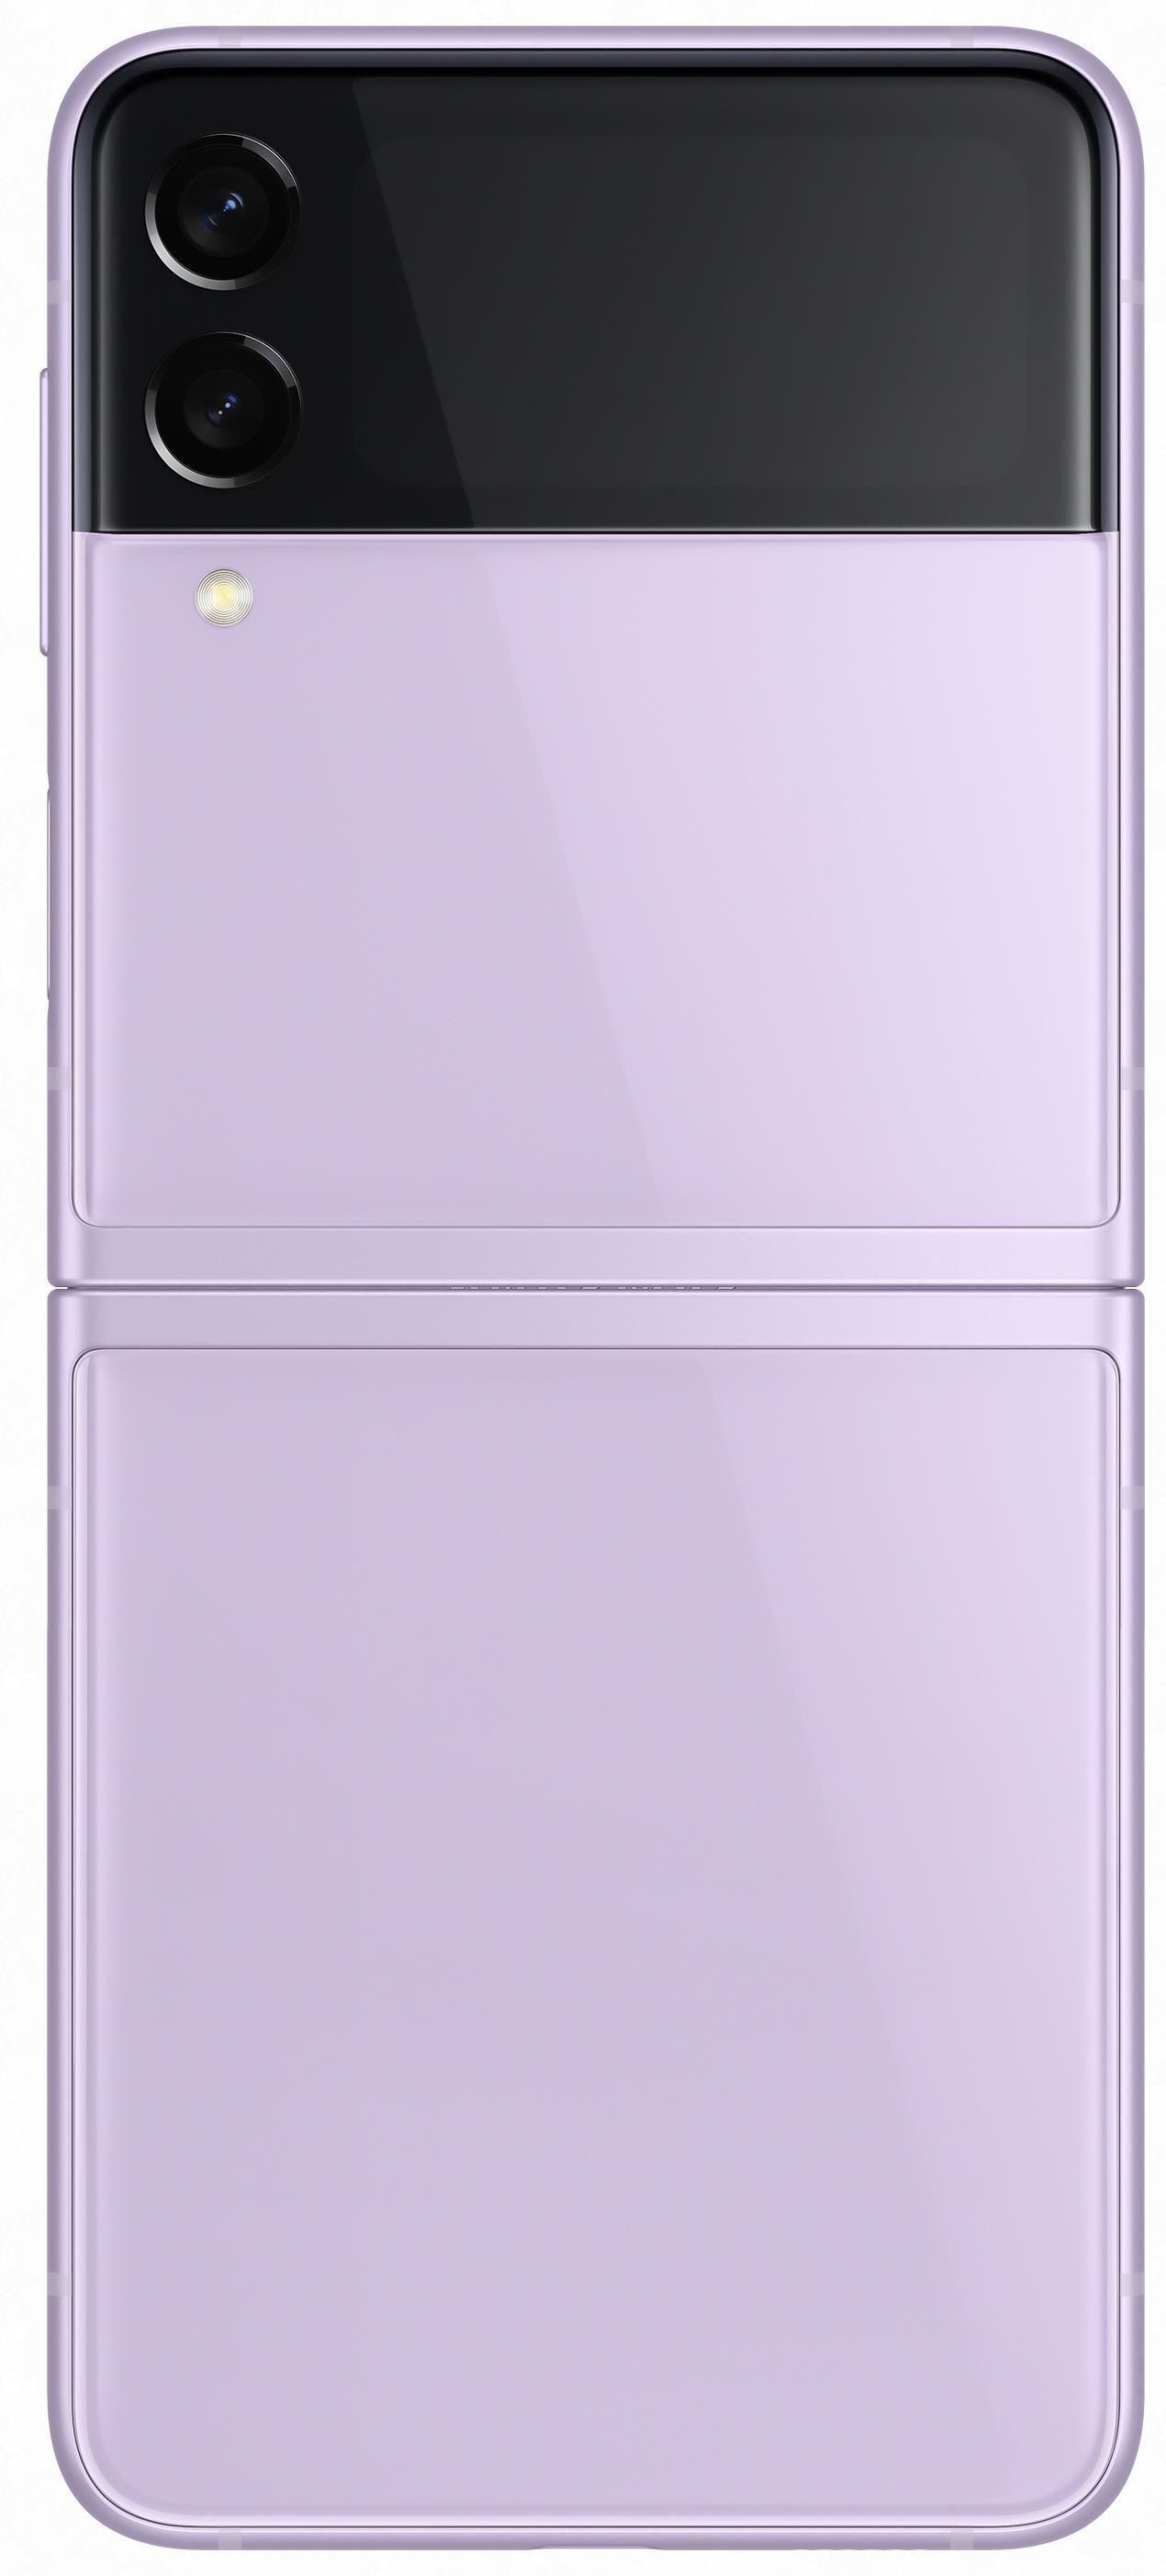 Samsung Galaxy Z Flip 3 5G / Foldable 6.7 Dynamic AMOLED + 1.9 Super AMOLED / Snapdragon 888 / 8GB / 256GB / 3300mAh /